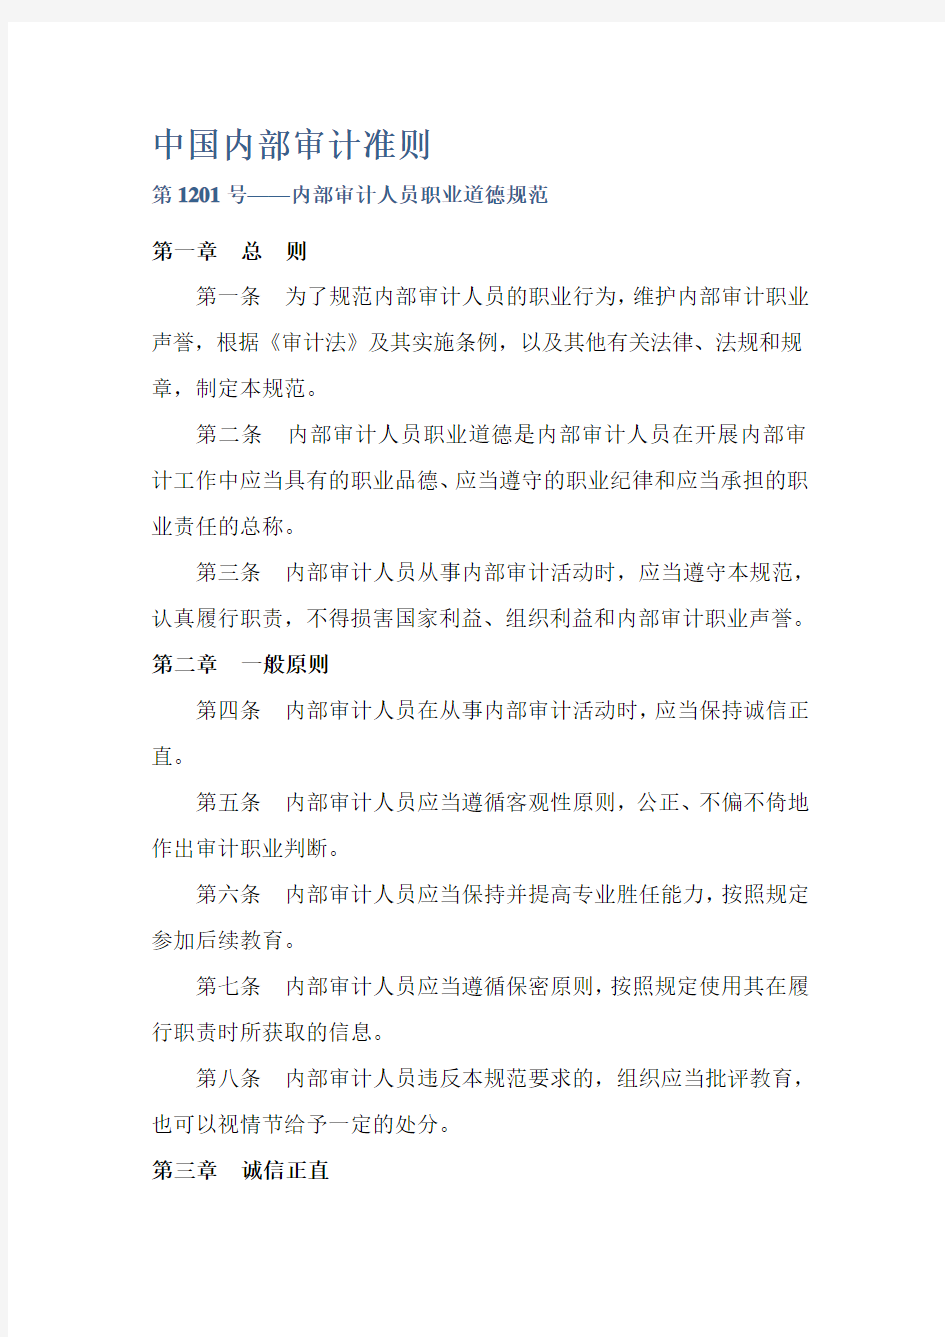 中国内部审计准则及具体准则(最新版全).